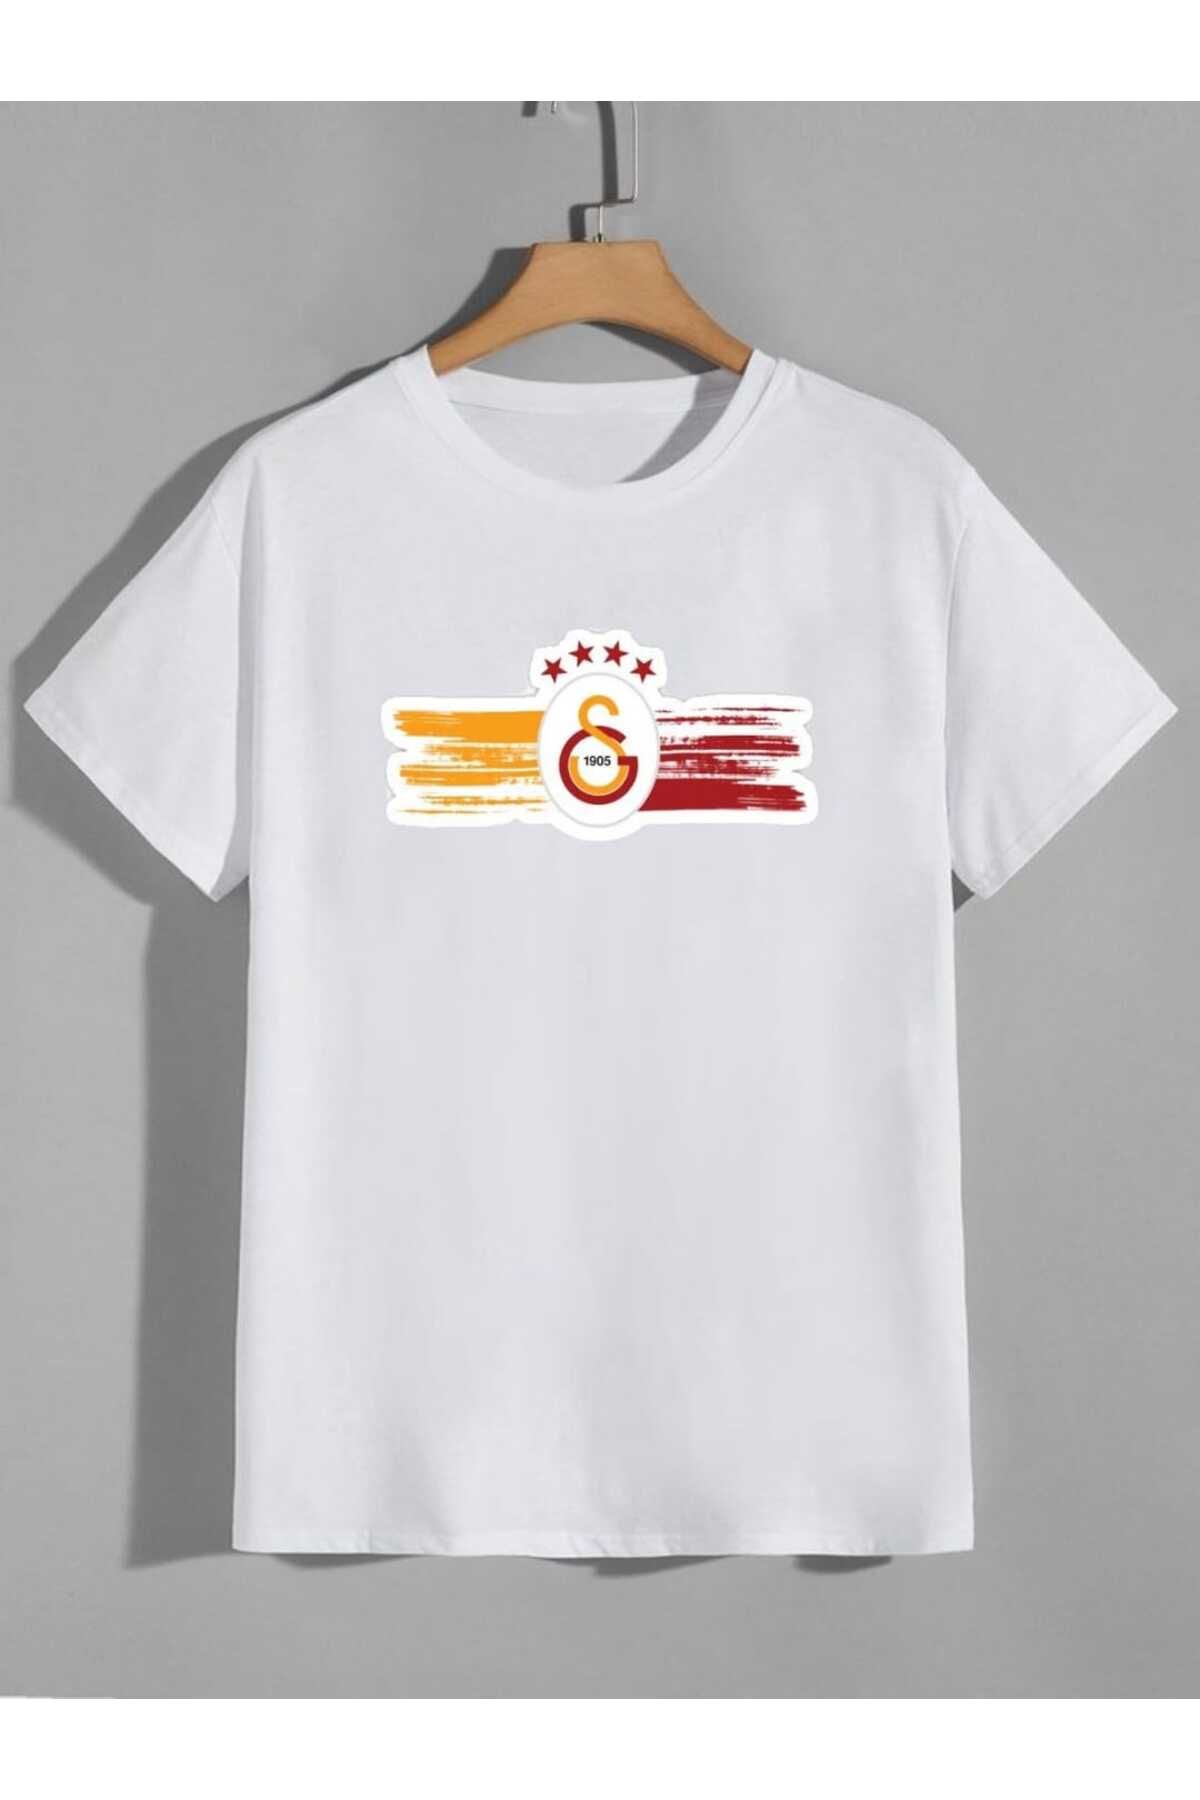 NİCE Oneoctobeer Unisex Galatasary Baskılı Beyaz Yeni Sezon Oversize Yazlık T-shirt